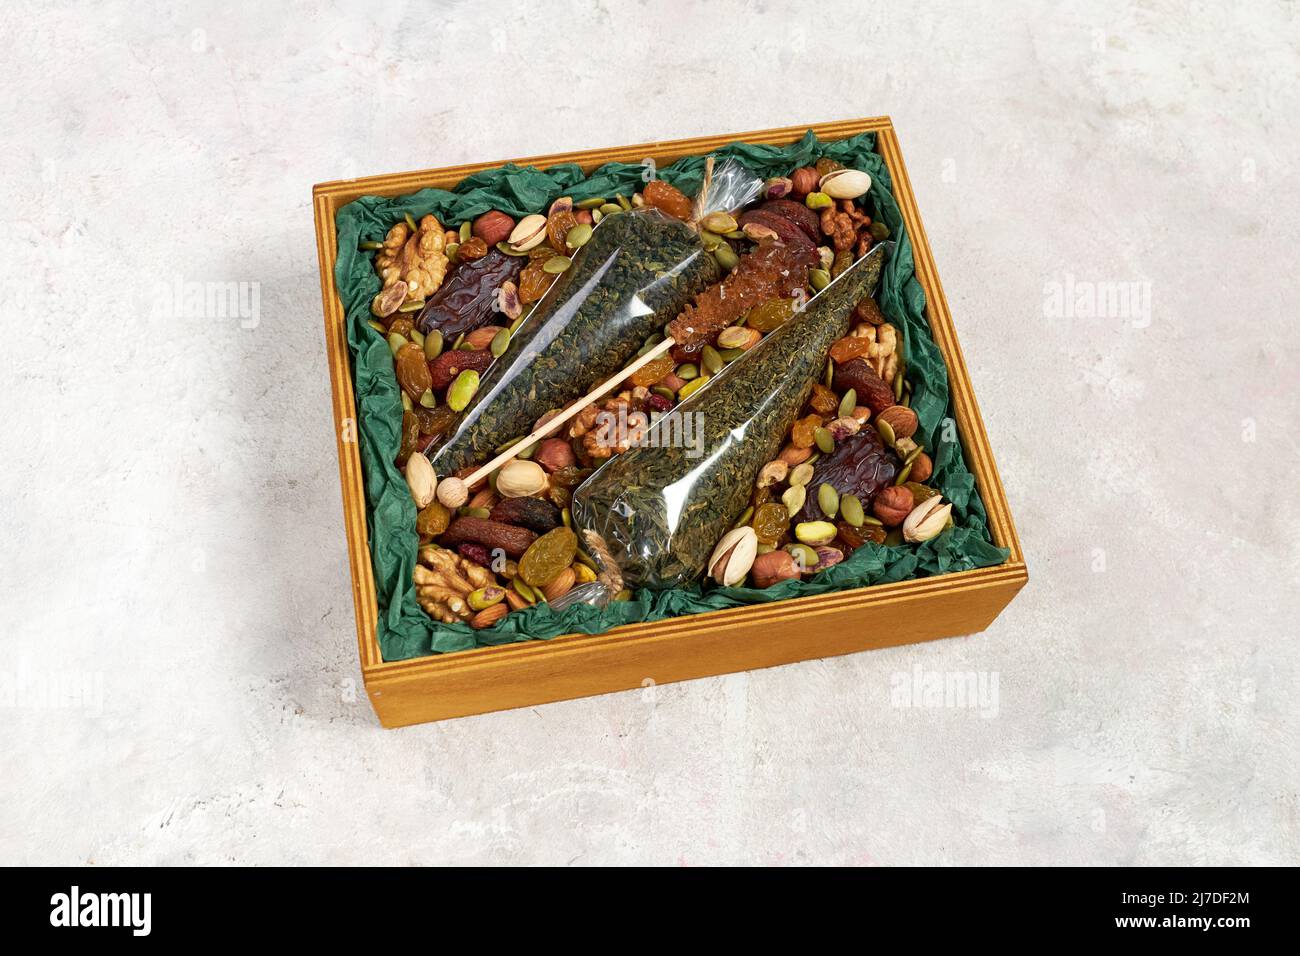 Una caja de madera llena de nueces, frutos secos y una bolsa de té verde como regalo Foto de stock